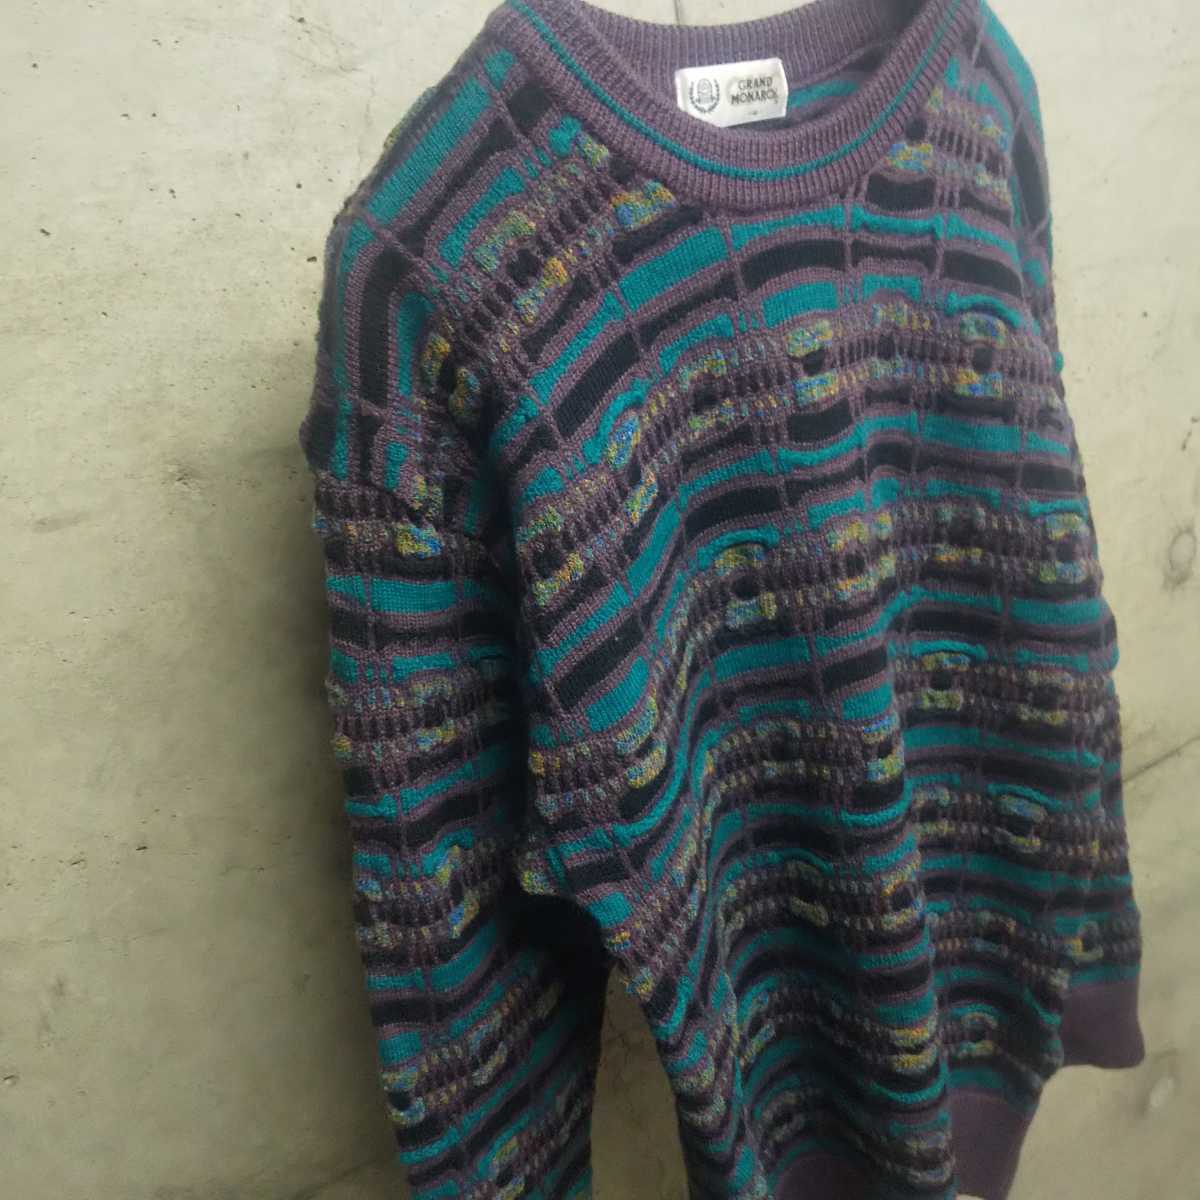 90s 3Dニット coogi風 総柄 立体編み セーター 古着 used vintage ヴィンテージ ビンテージ ニット knit